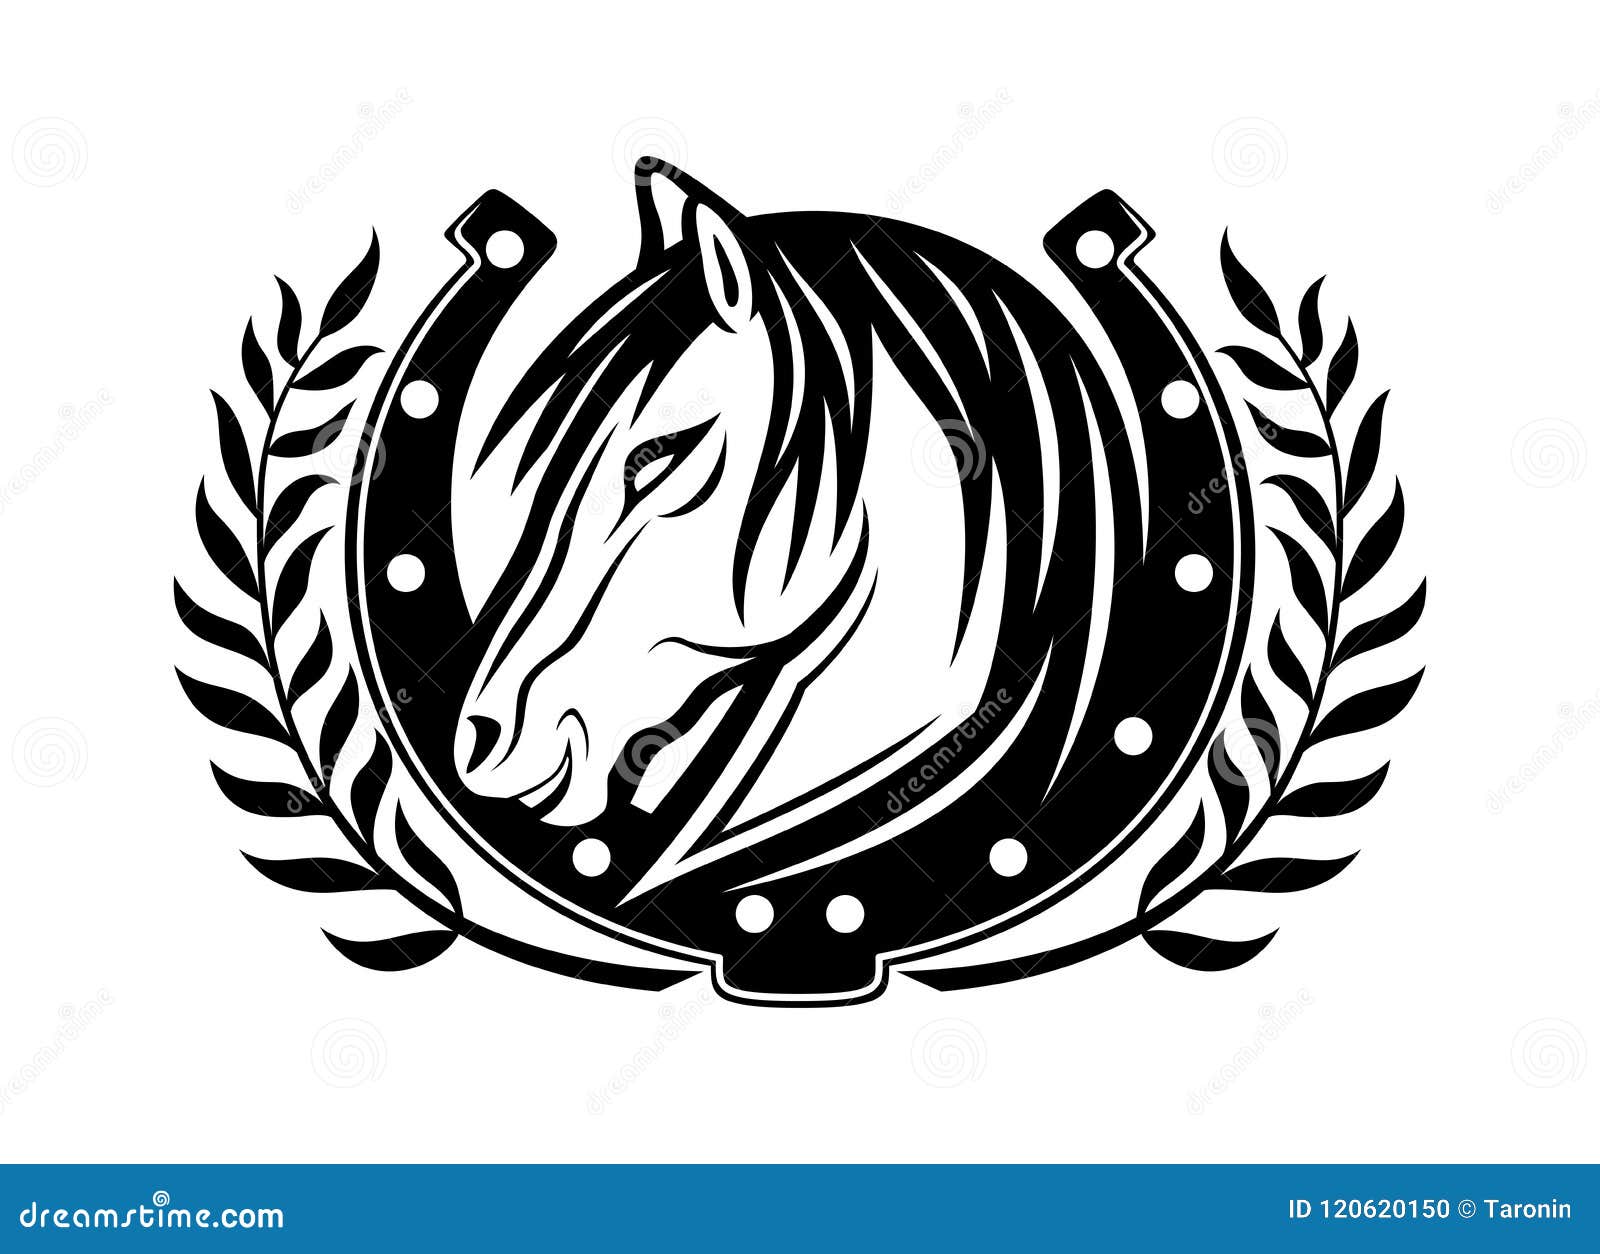 Horse and horseshoe. stock illustration. Illustration of horseshoe ...